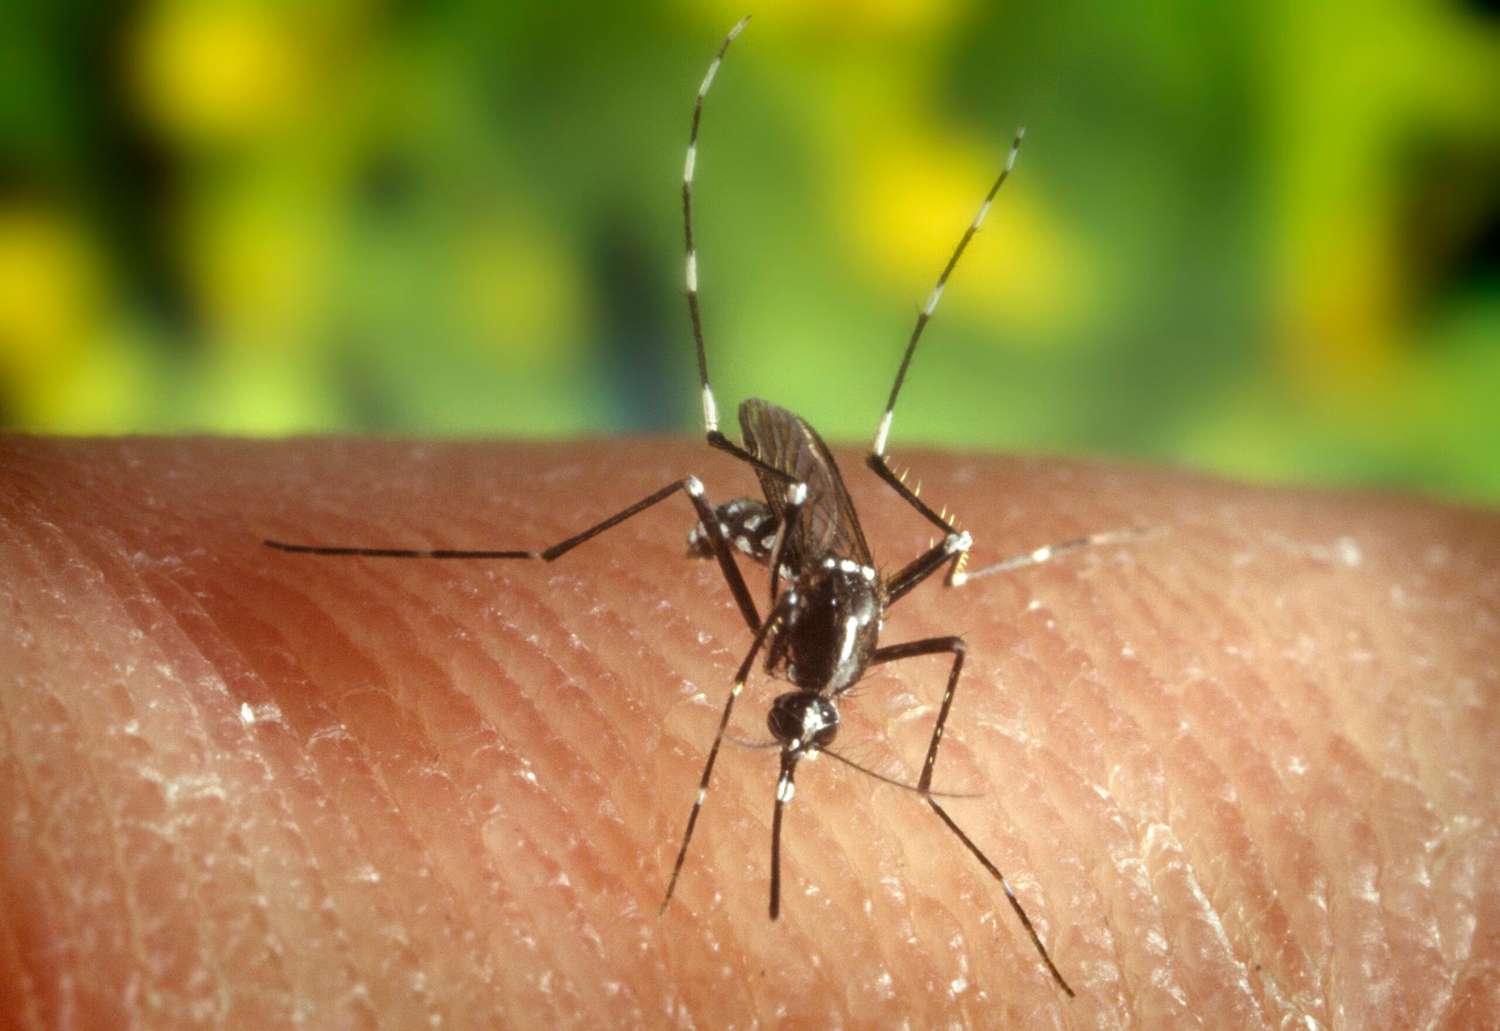 Estrategias para controlar la propagación del Aedes aegypti